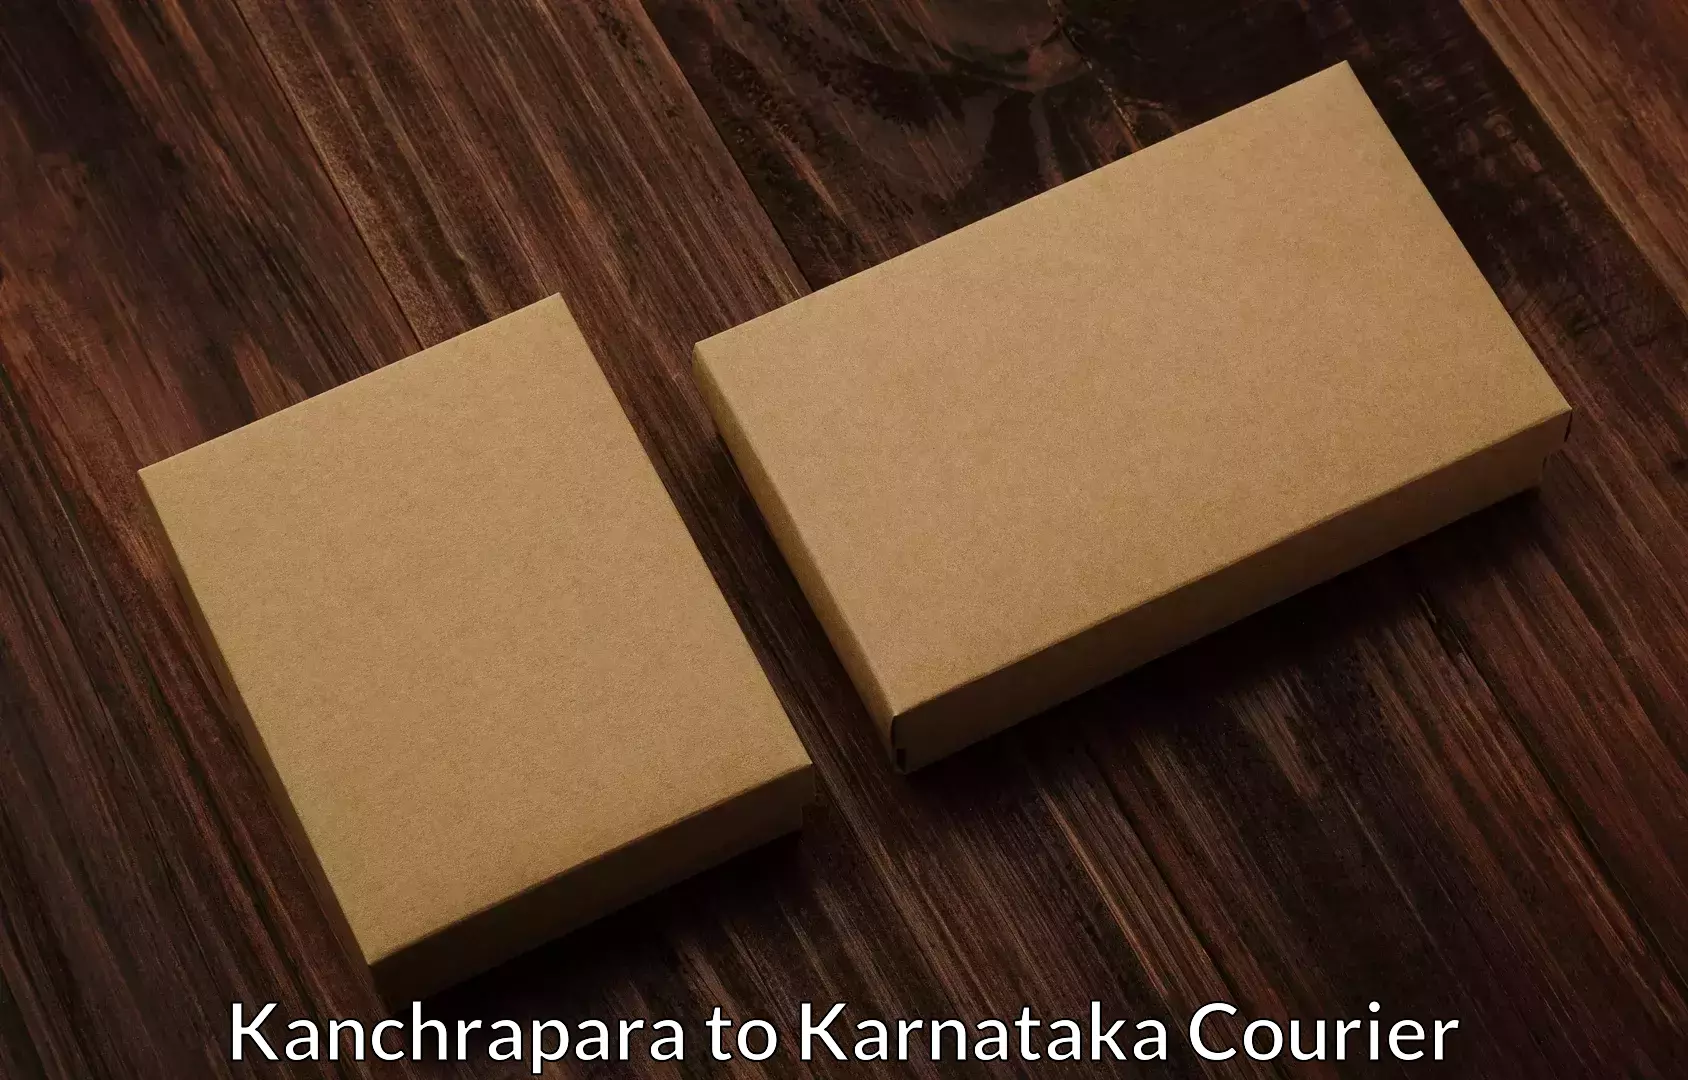 Efficient moving company Kanchrapara to yedrami